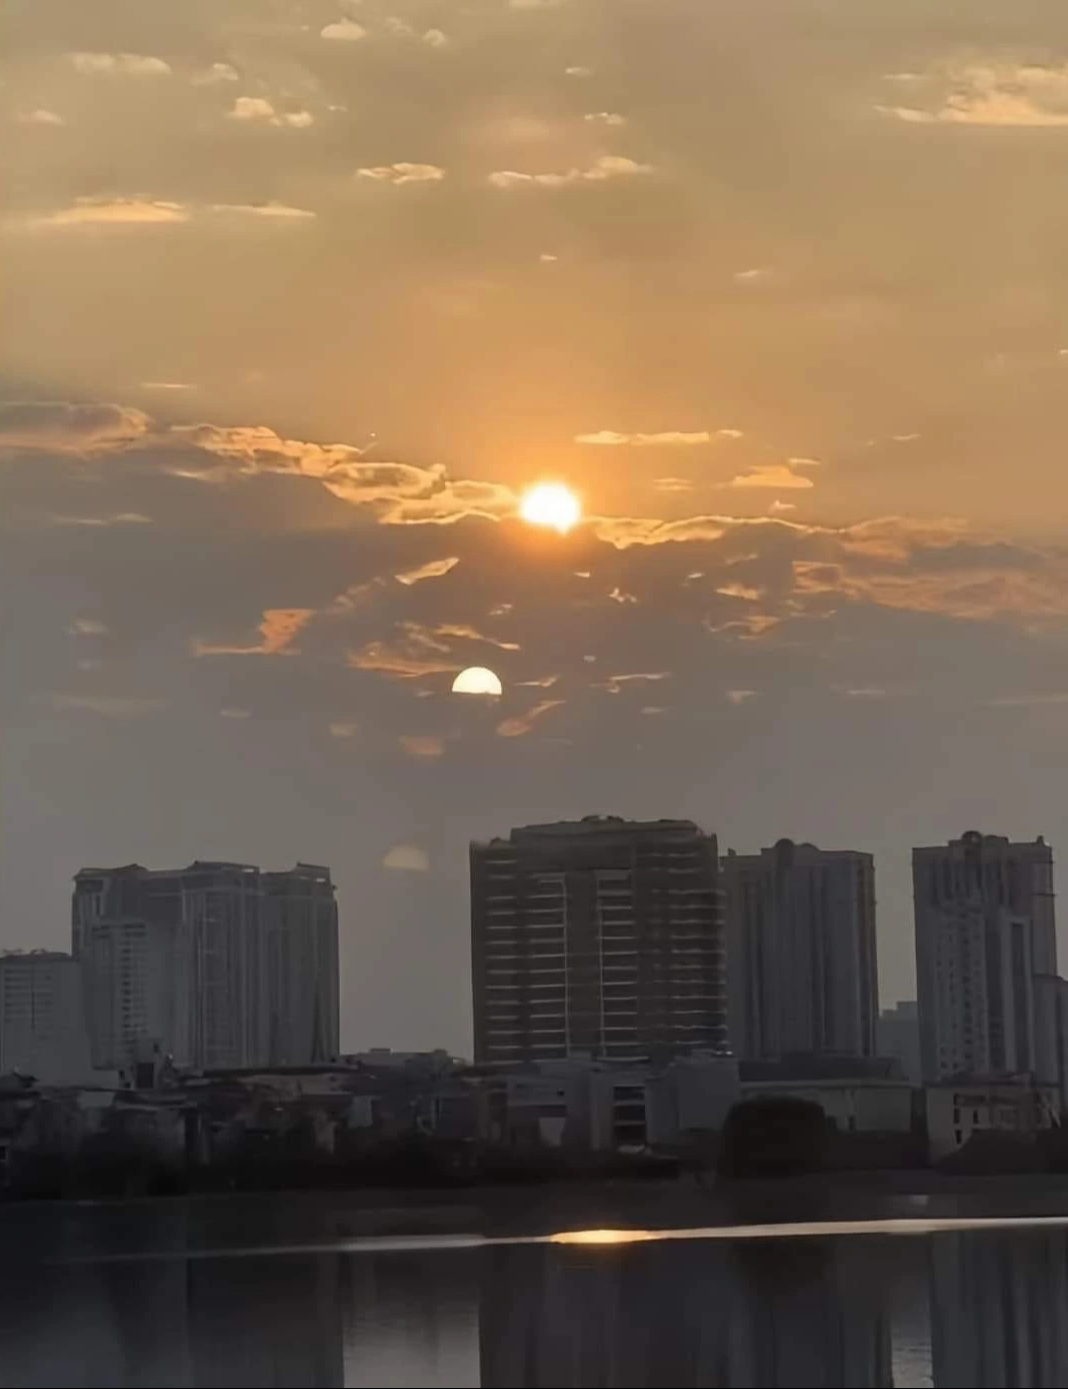 Hiện tượng 2 mặt trời cùng lúc xuất hiện trên bầu trời ở Hà Nội - ảnh: Fb Châu Vũ